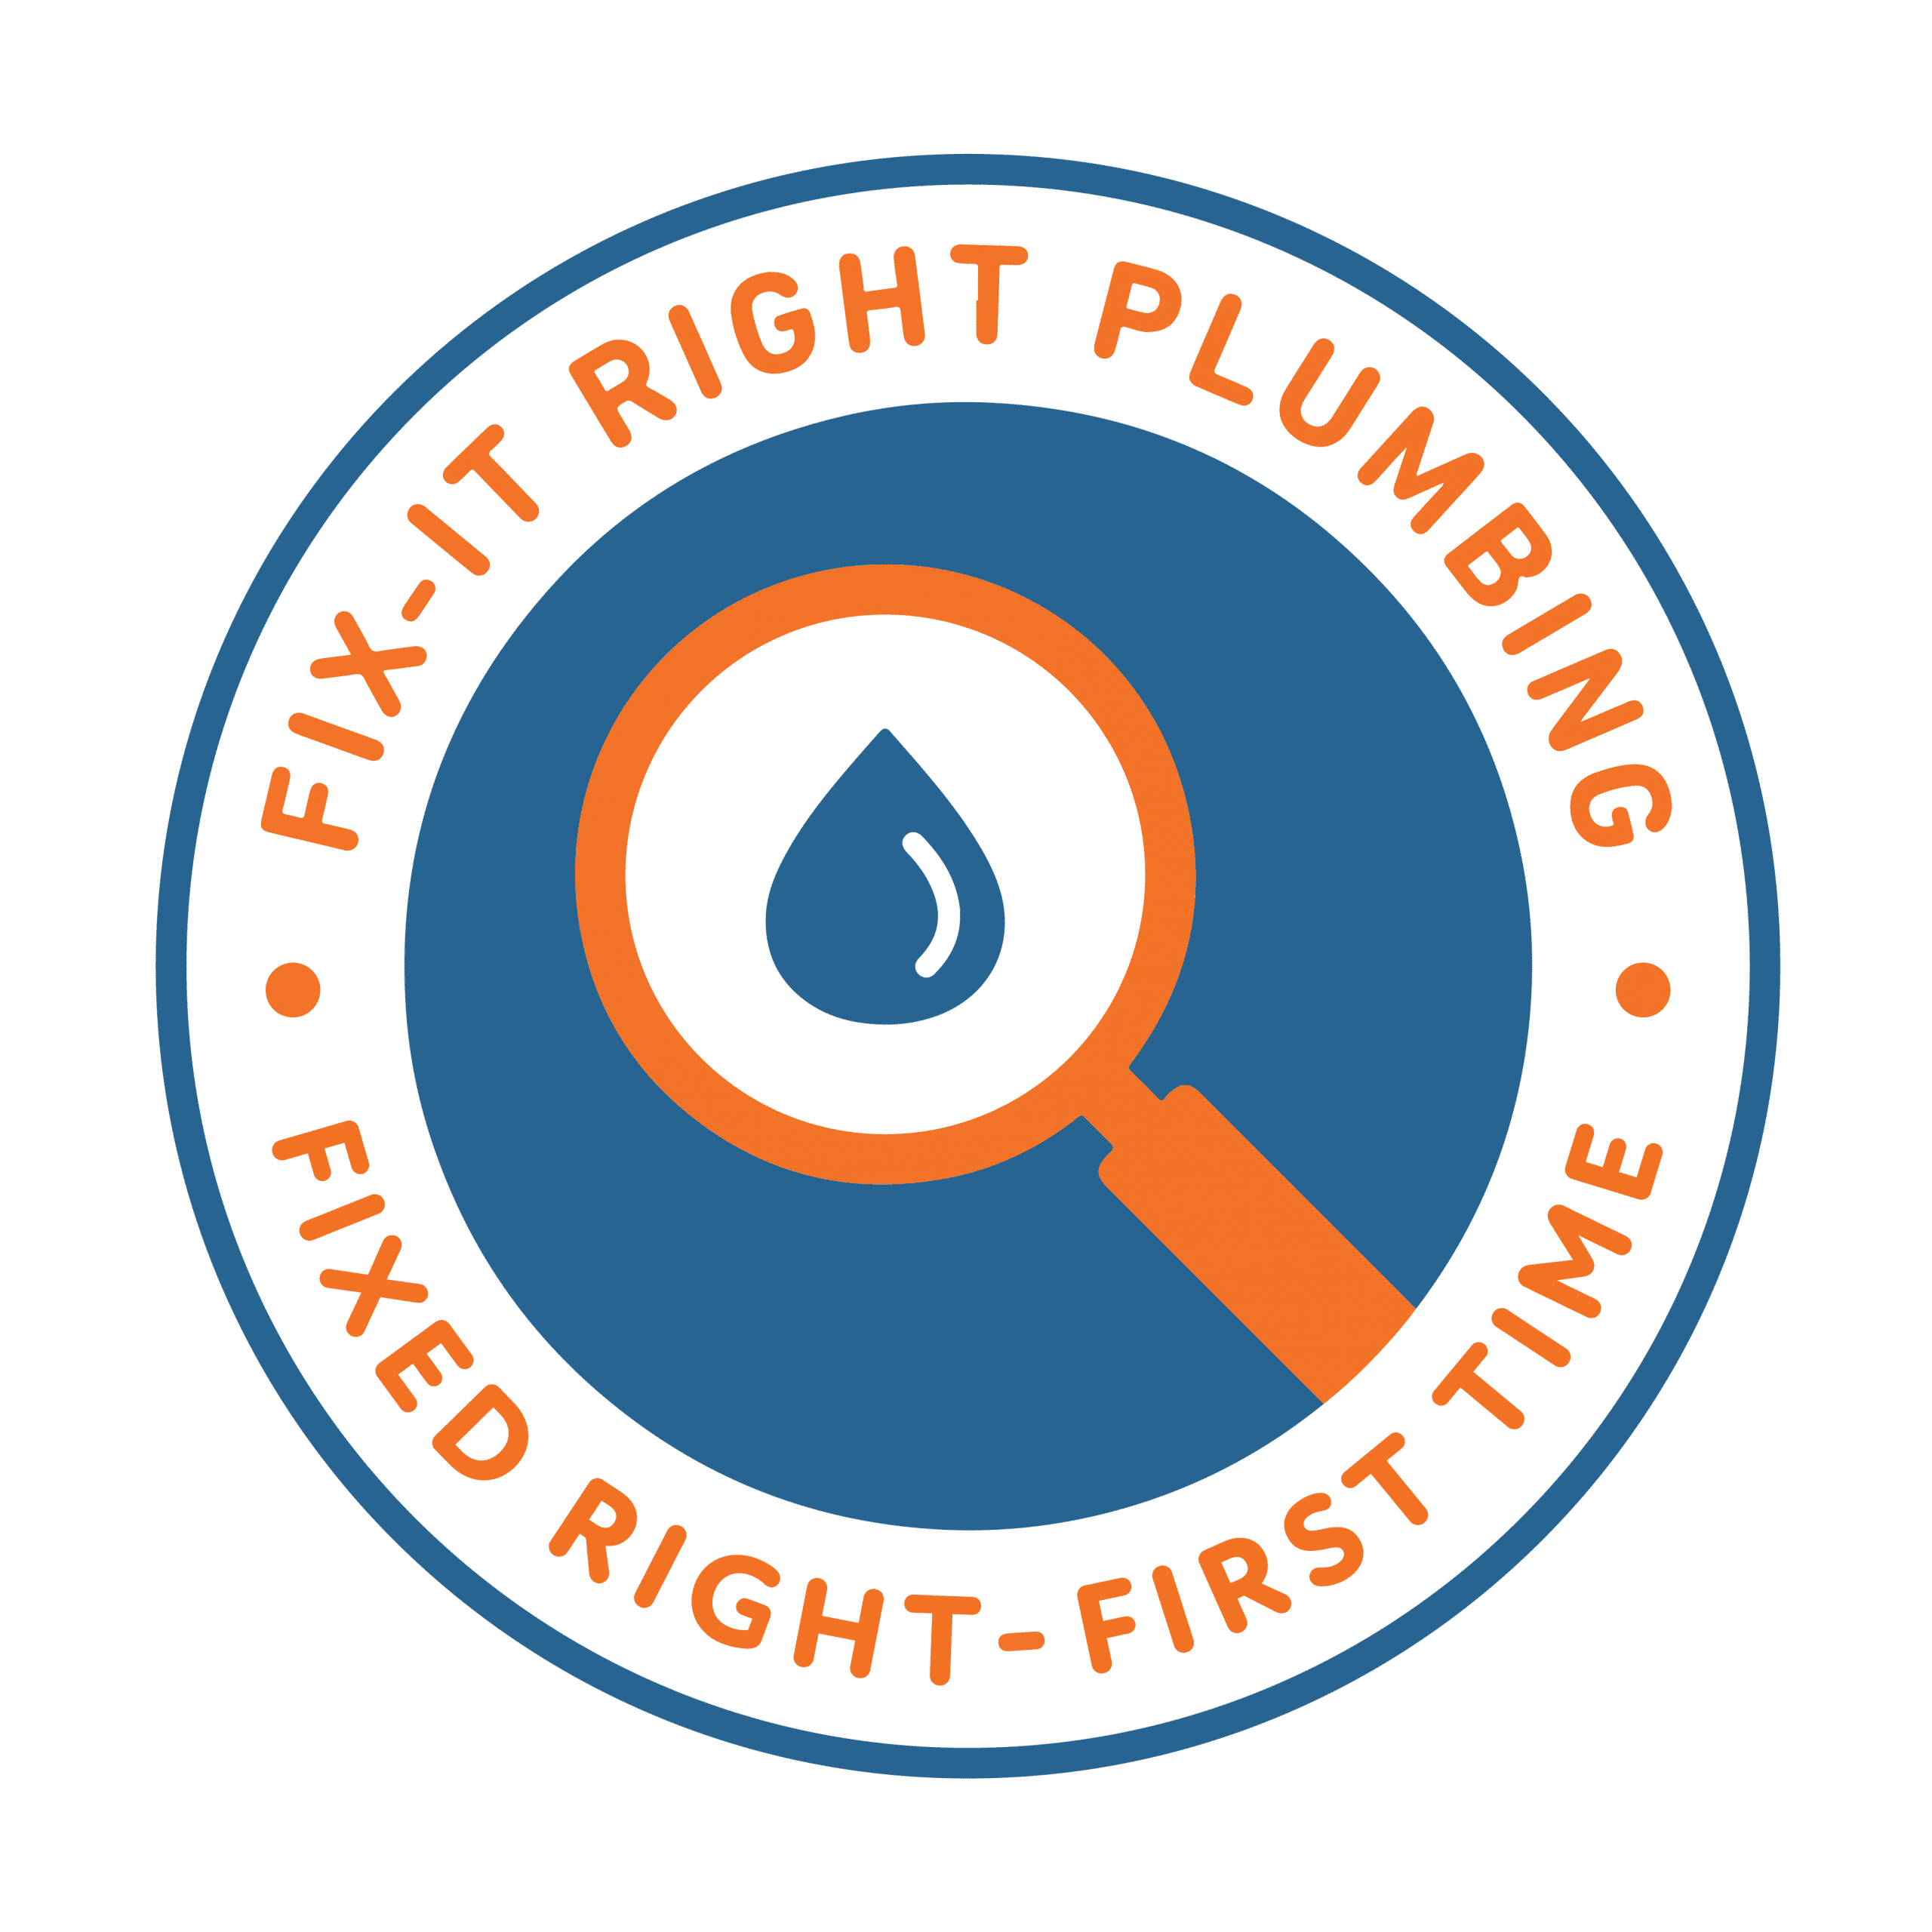 (c) Fixitrightplumbing.com.au